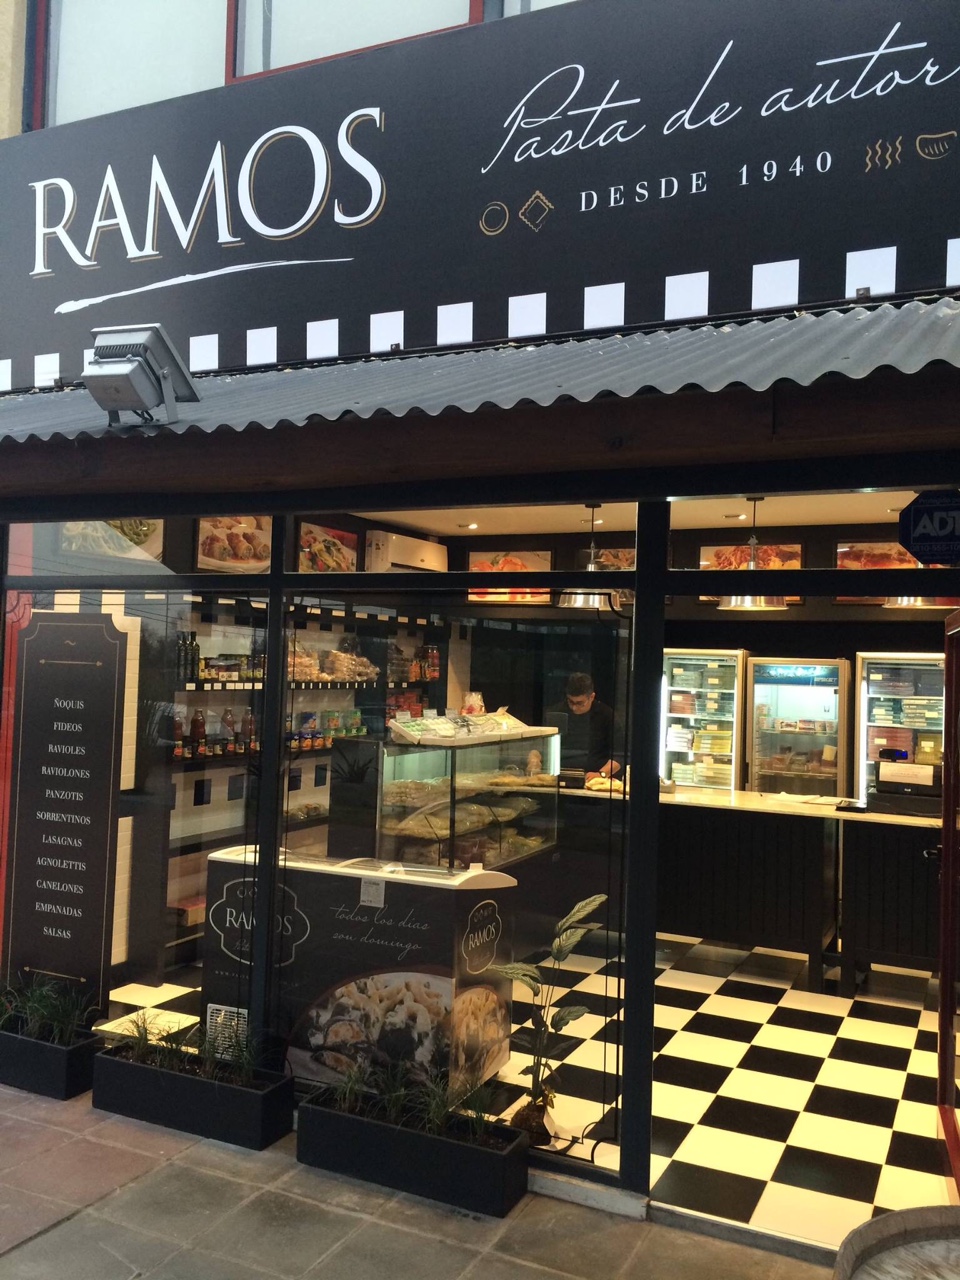 Local Pastas Ramos